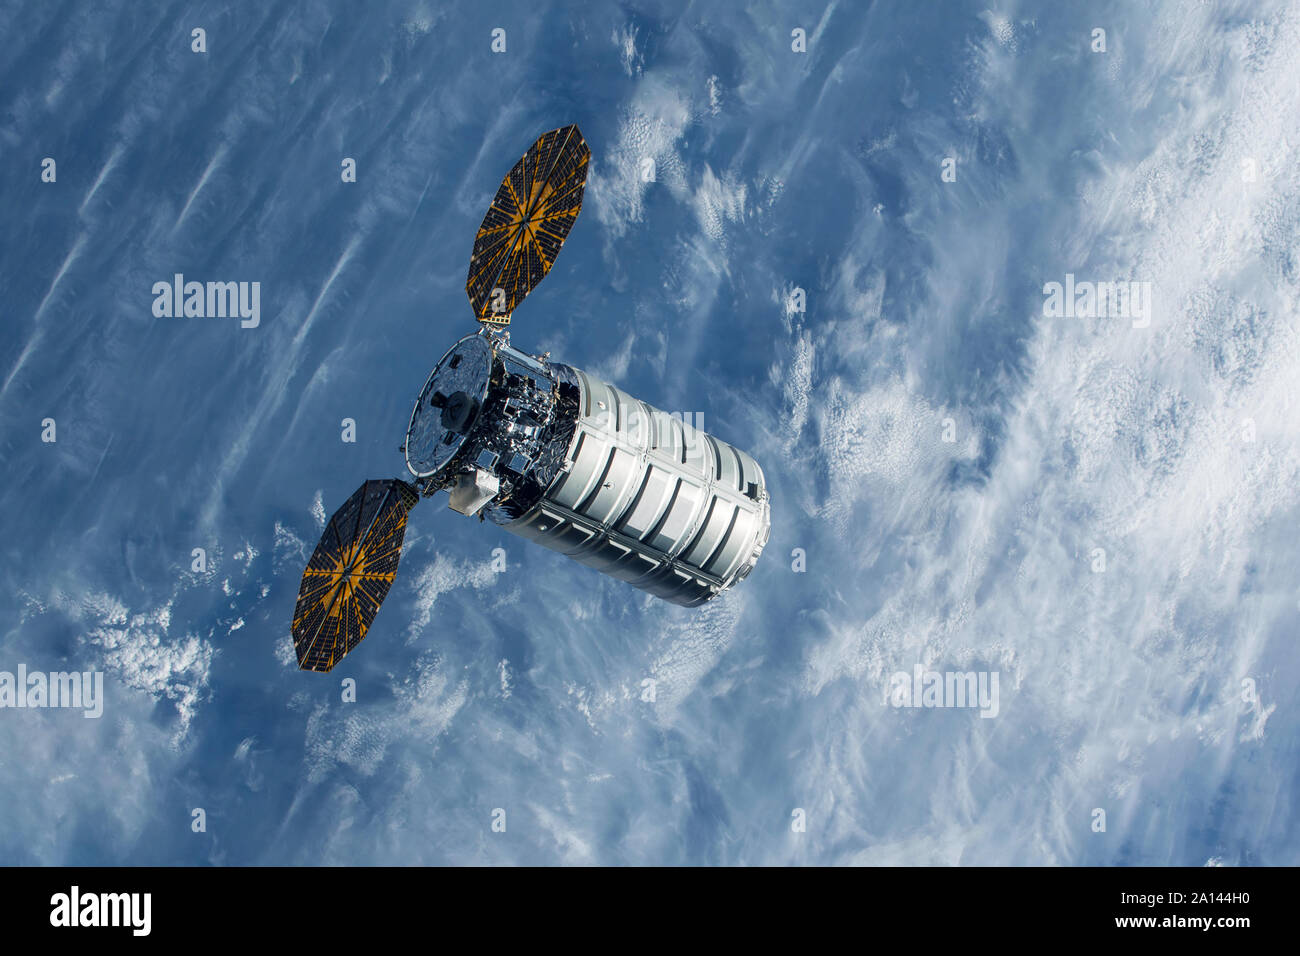 Separare il modulo spaziale, sul terreno.Gli elementi di questa immagine sono state arredate dalla NASA Foto Stock